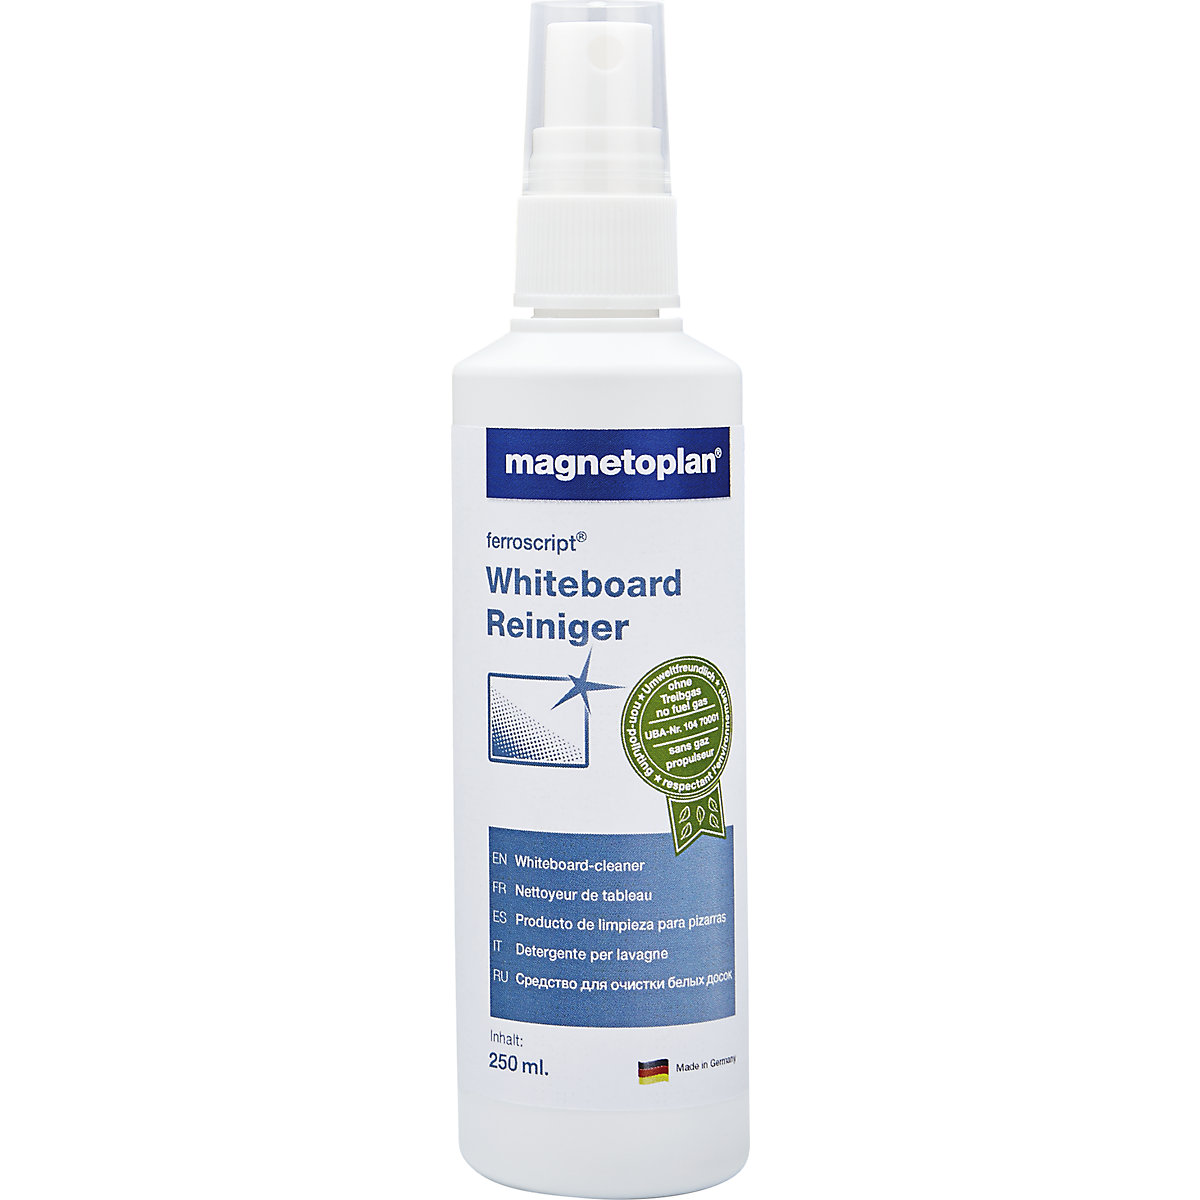 Detergent pentru panou whiteboard ferroscript&reg; - magnetoplan